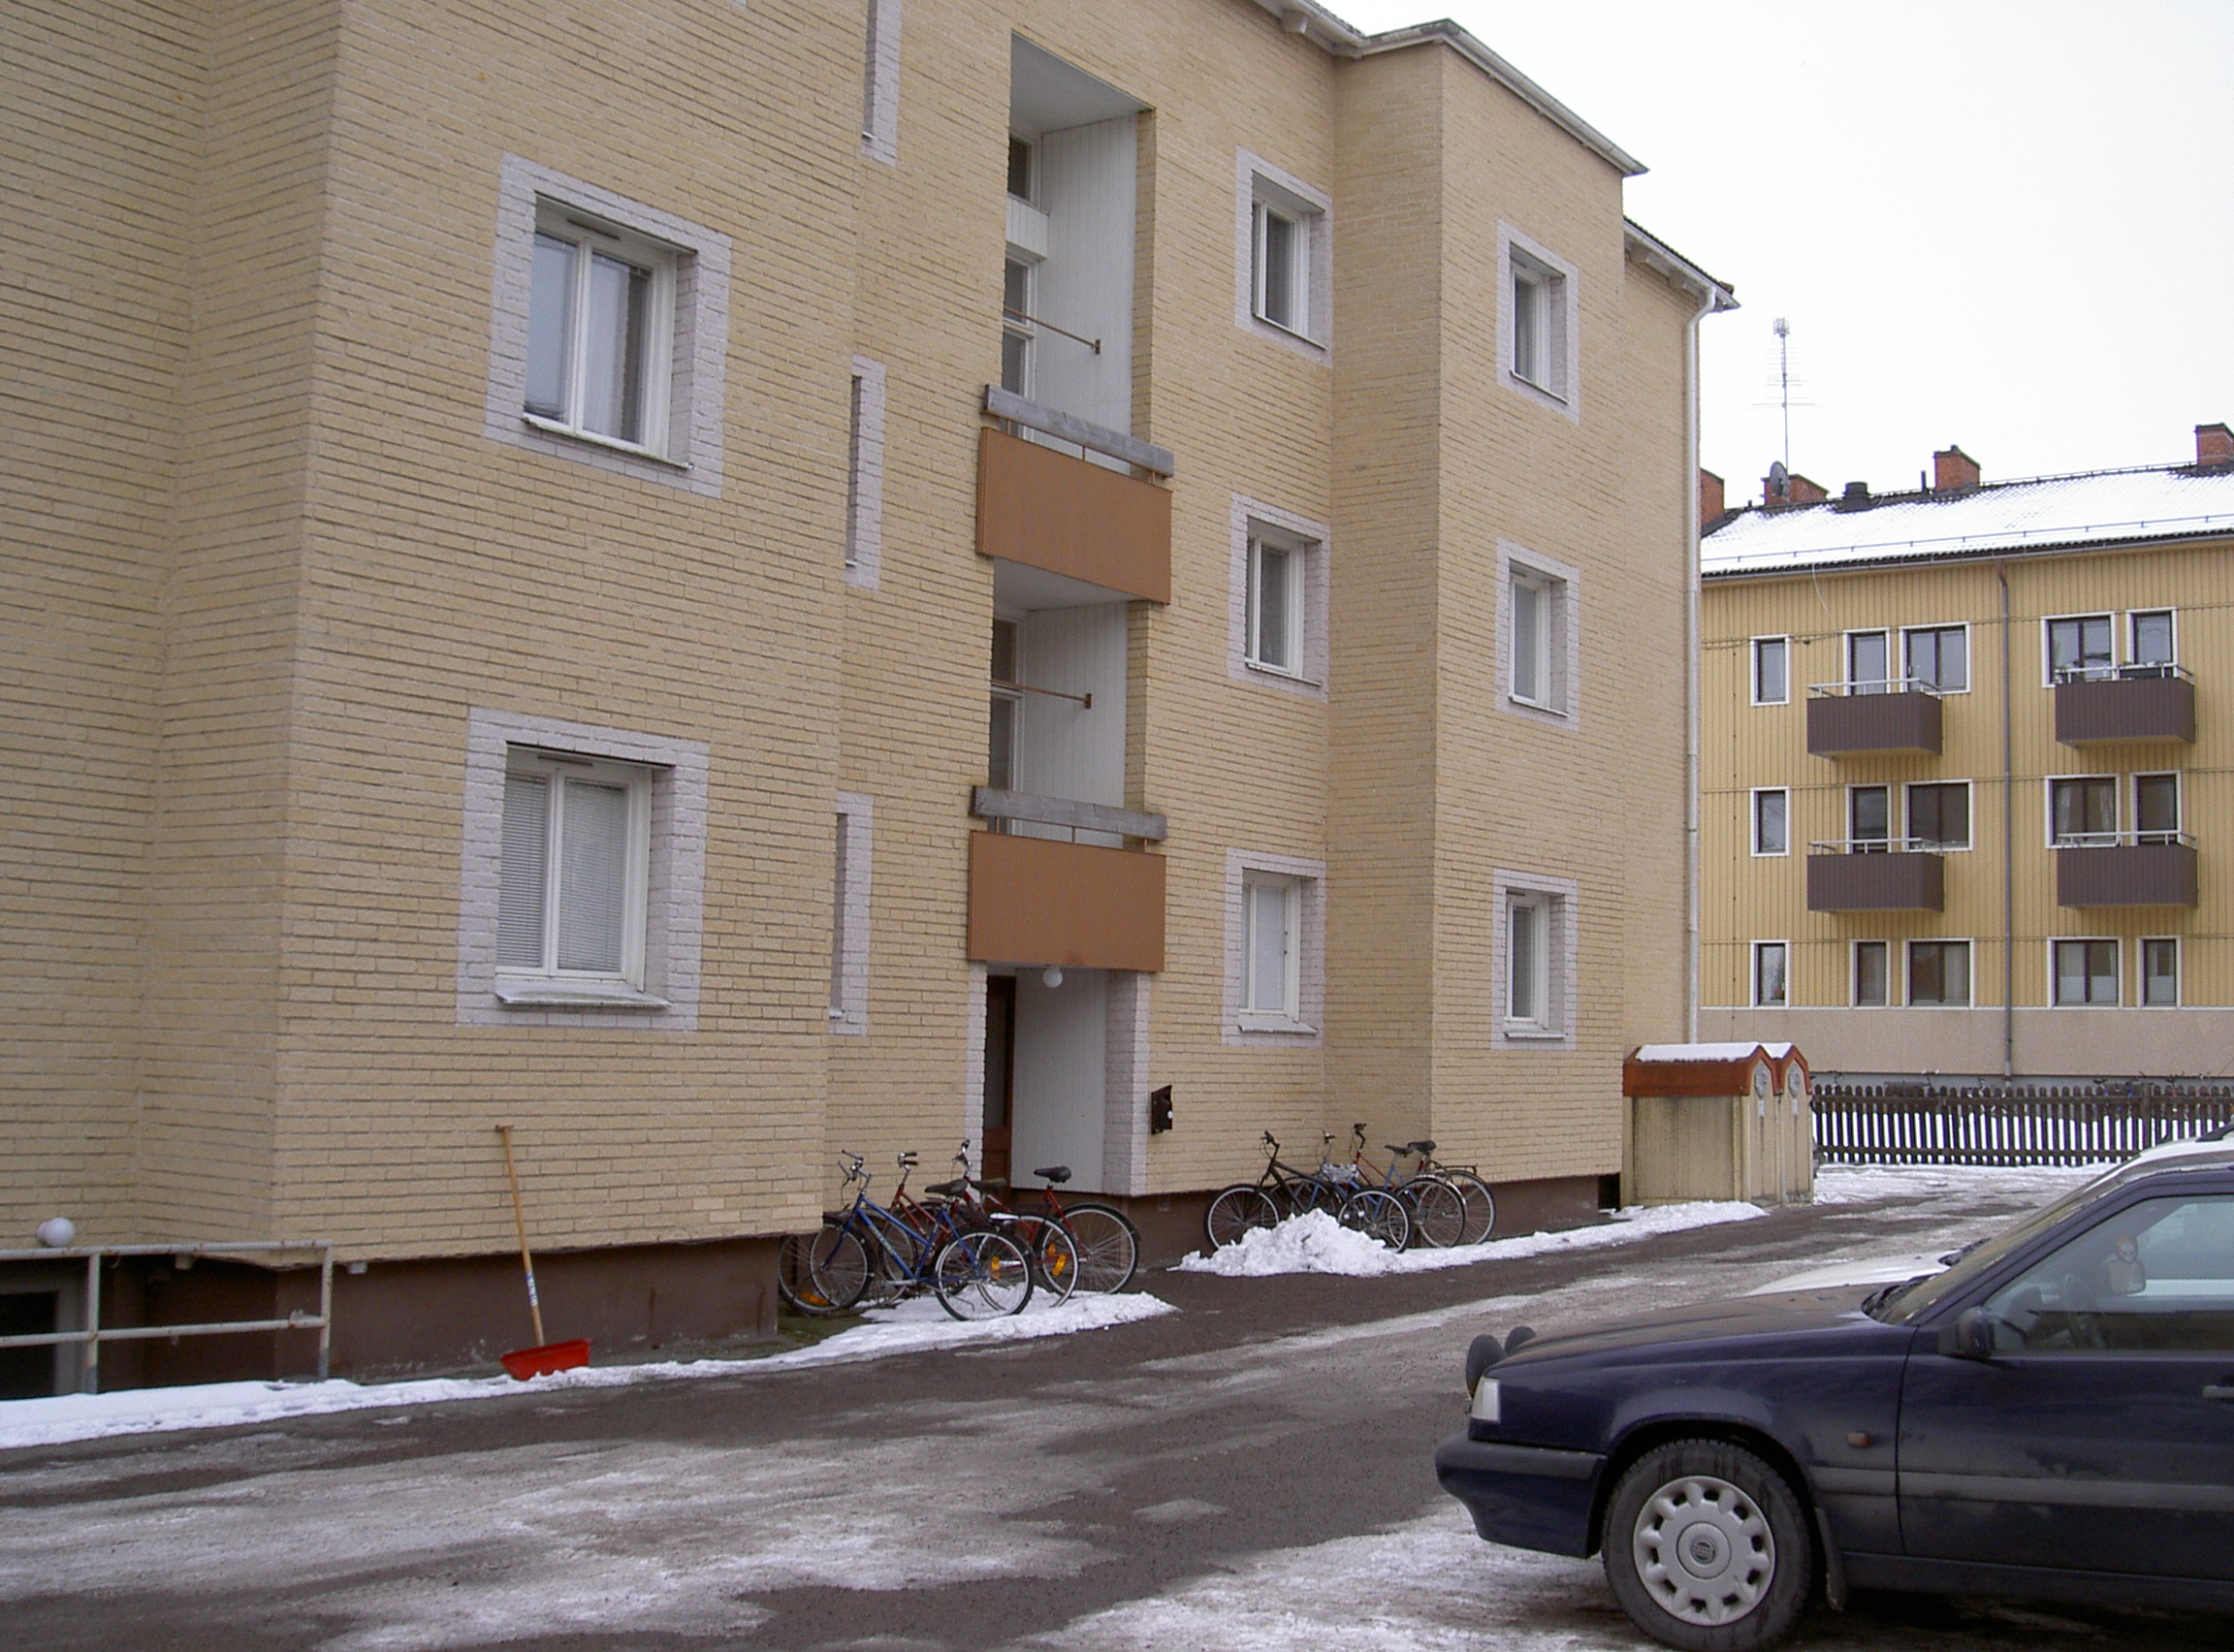 Lägenhet i Haga, Norrköping, Sverige, Apelgatan 21